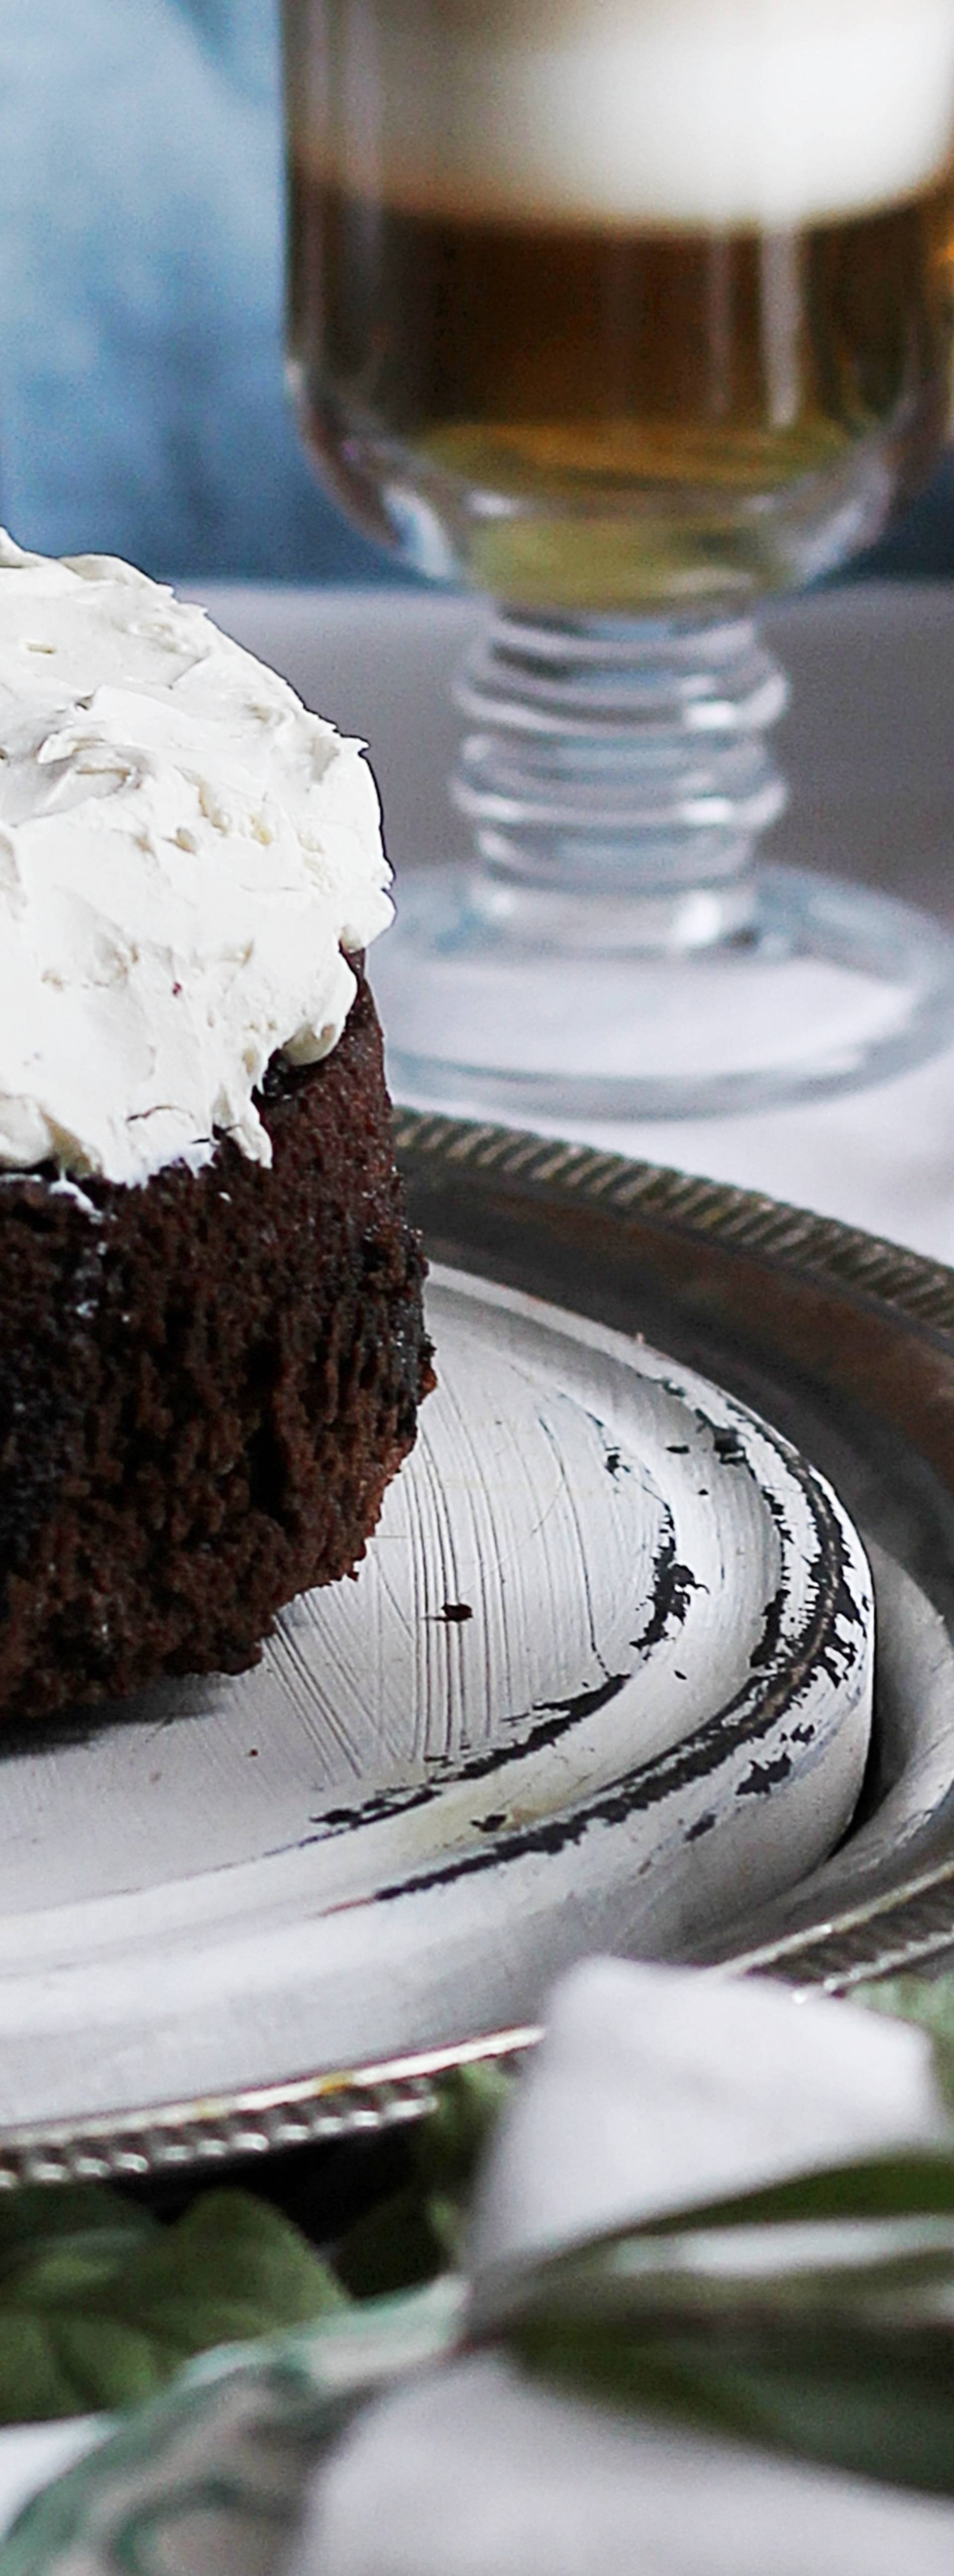 Svjetski dan čokoladne torte: Isprobajte recepte i zasladite se uz svima omiljenu poslasticu